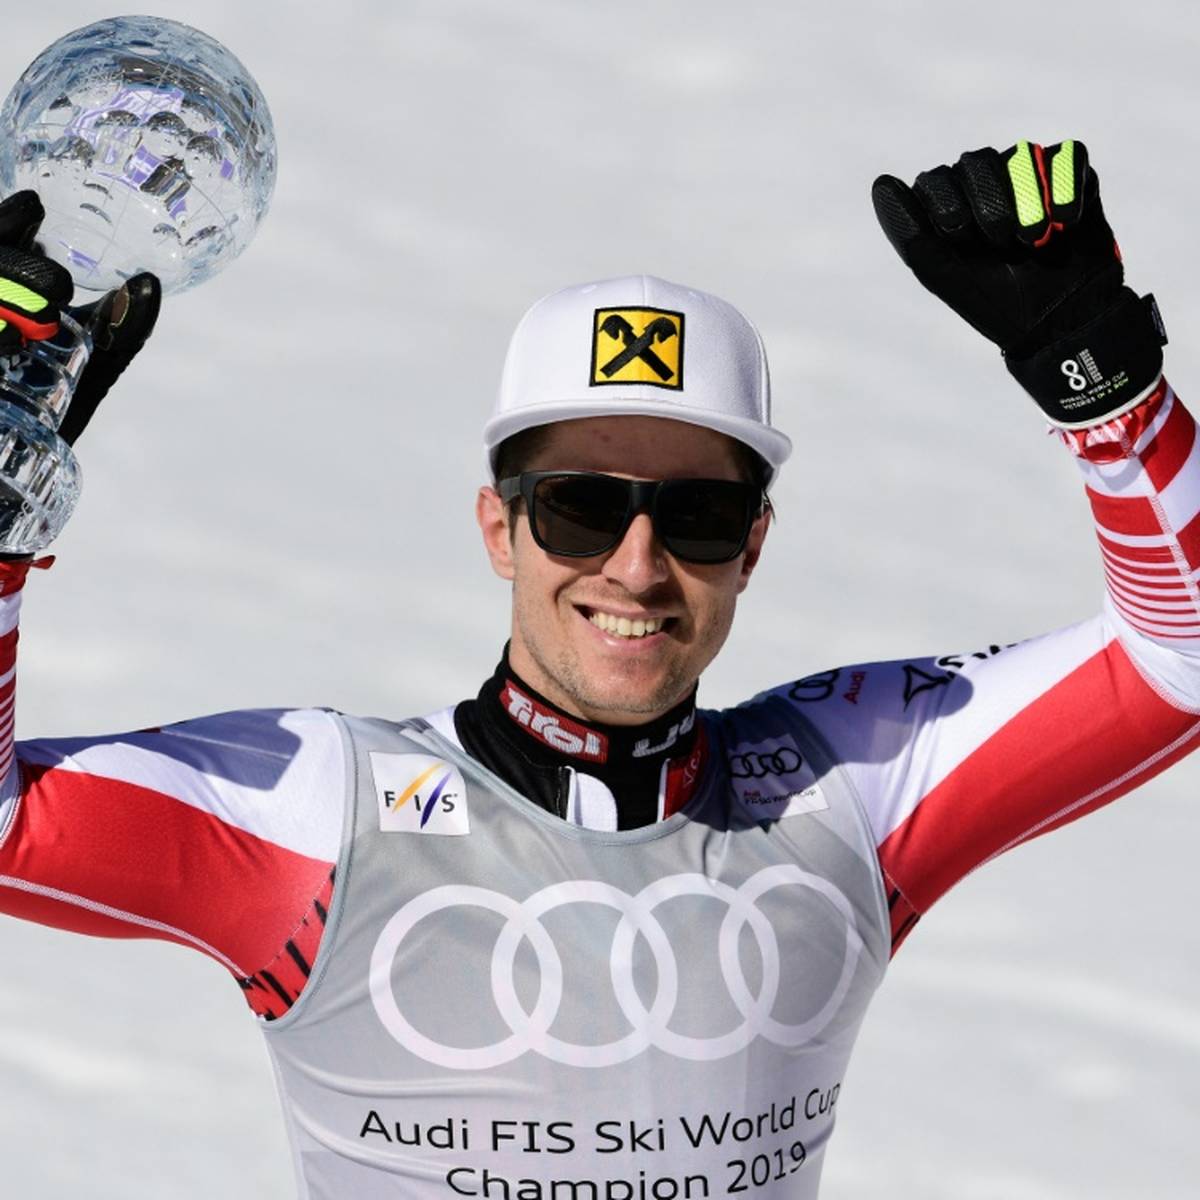 Österreichs Ski-Idol Marcel Hirscher hat ein spektakuläres Comeback gefeiert - auf der berühmt-berüchtigten Streif.